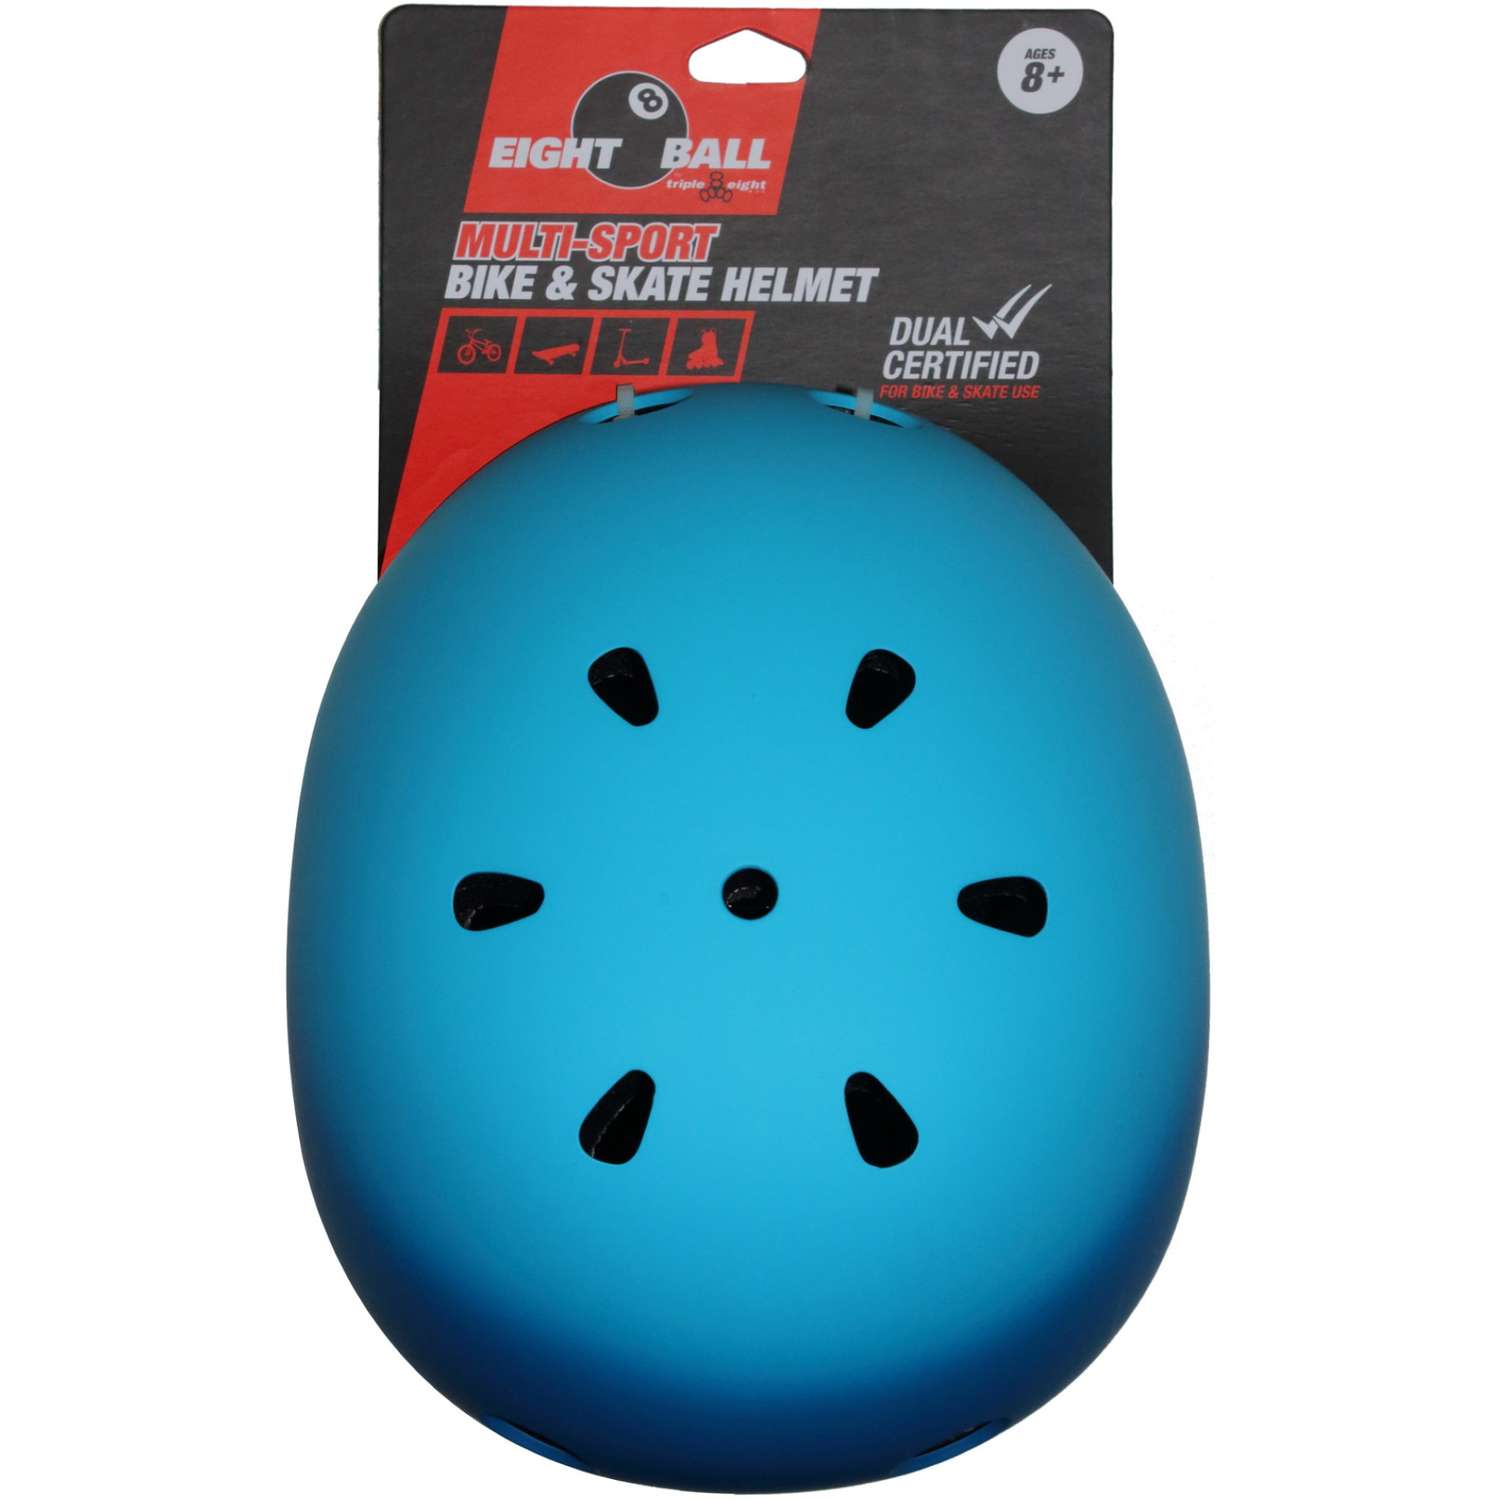 Шлем защитный спортивный Eight Ball Blue (синий) / размер L / возраст 8+ / обхват головы 52-56 см. / для детей - фото 2